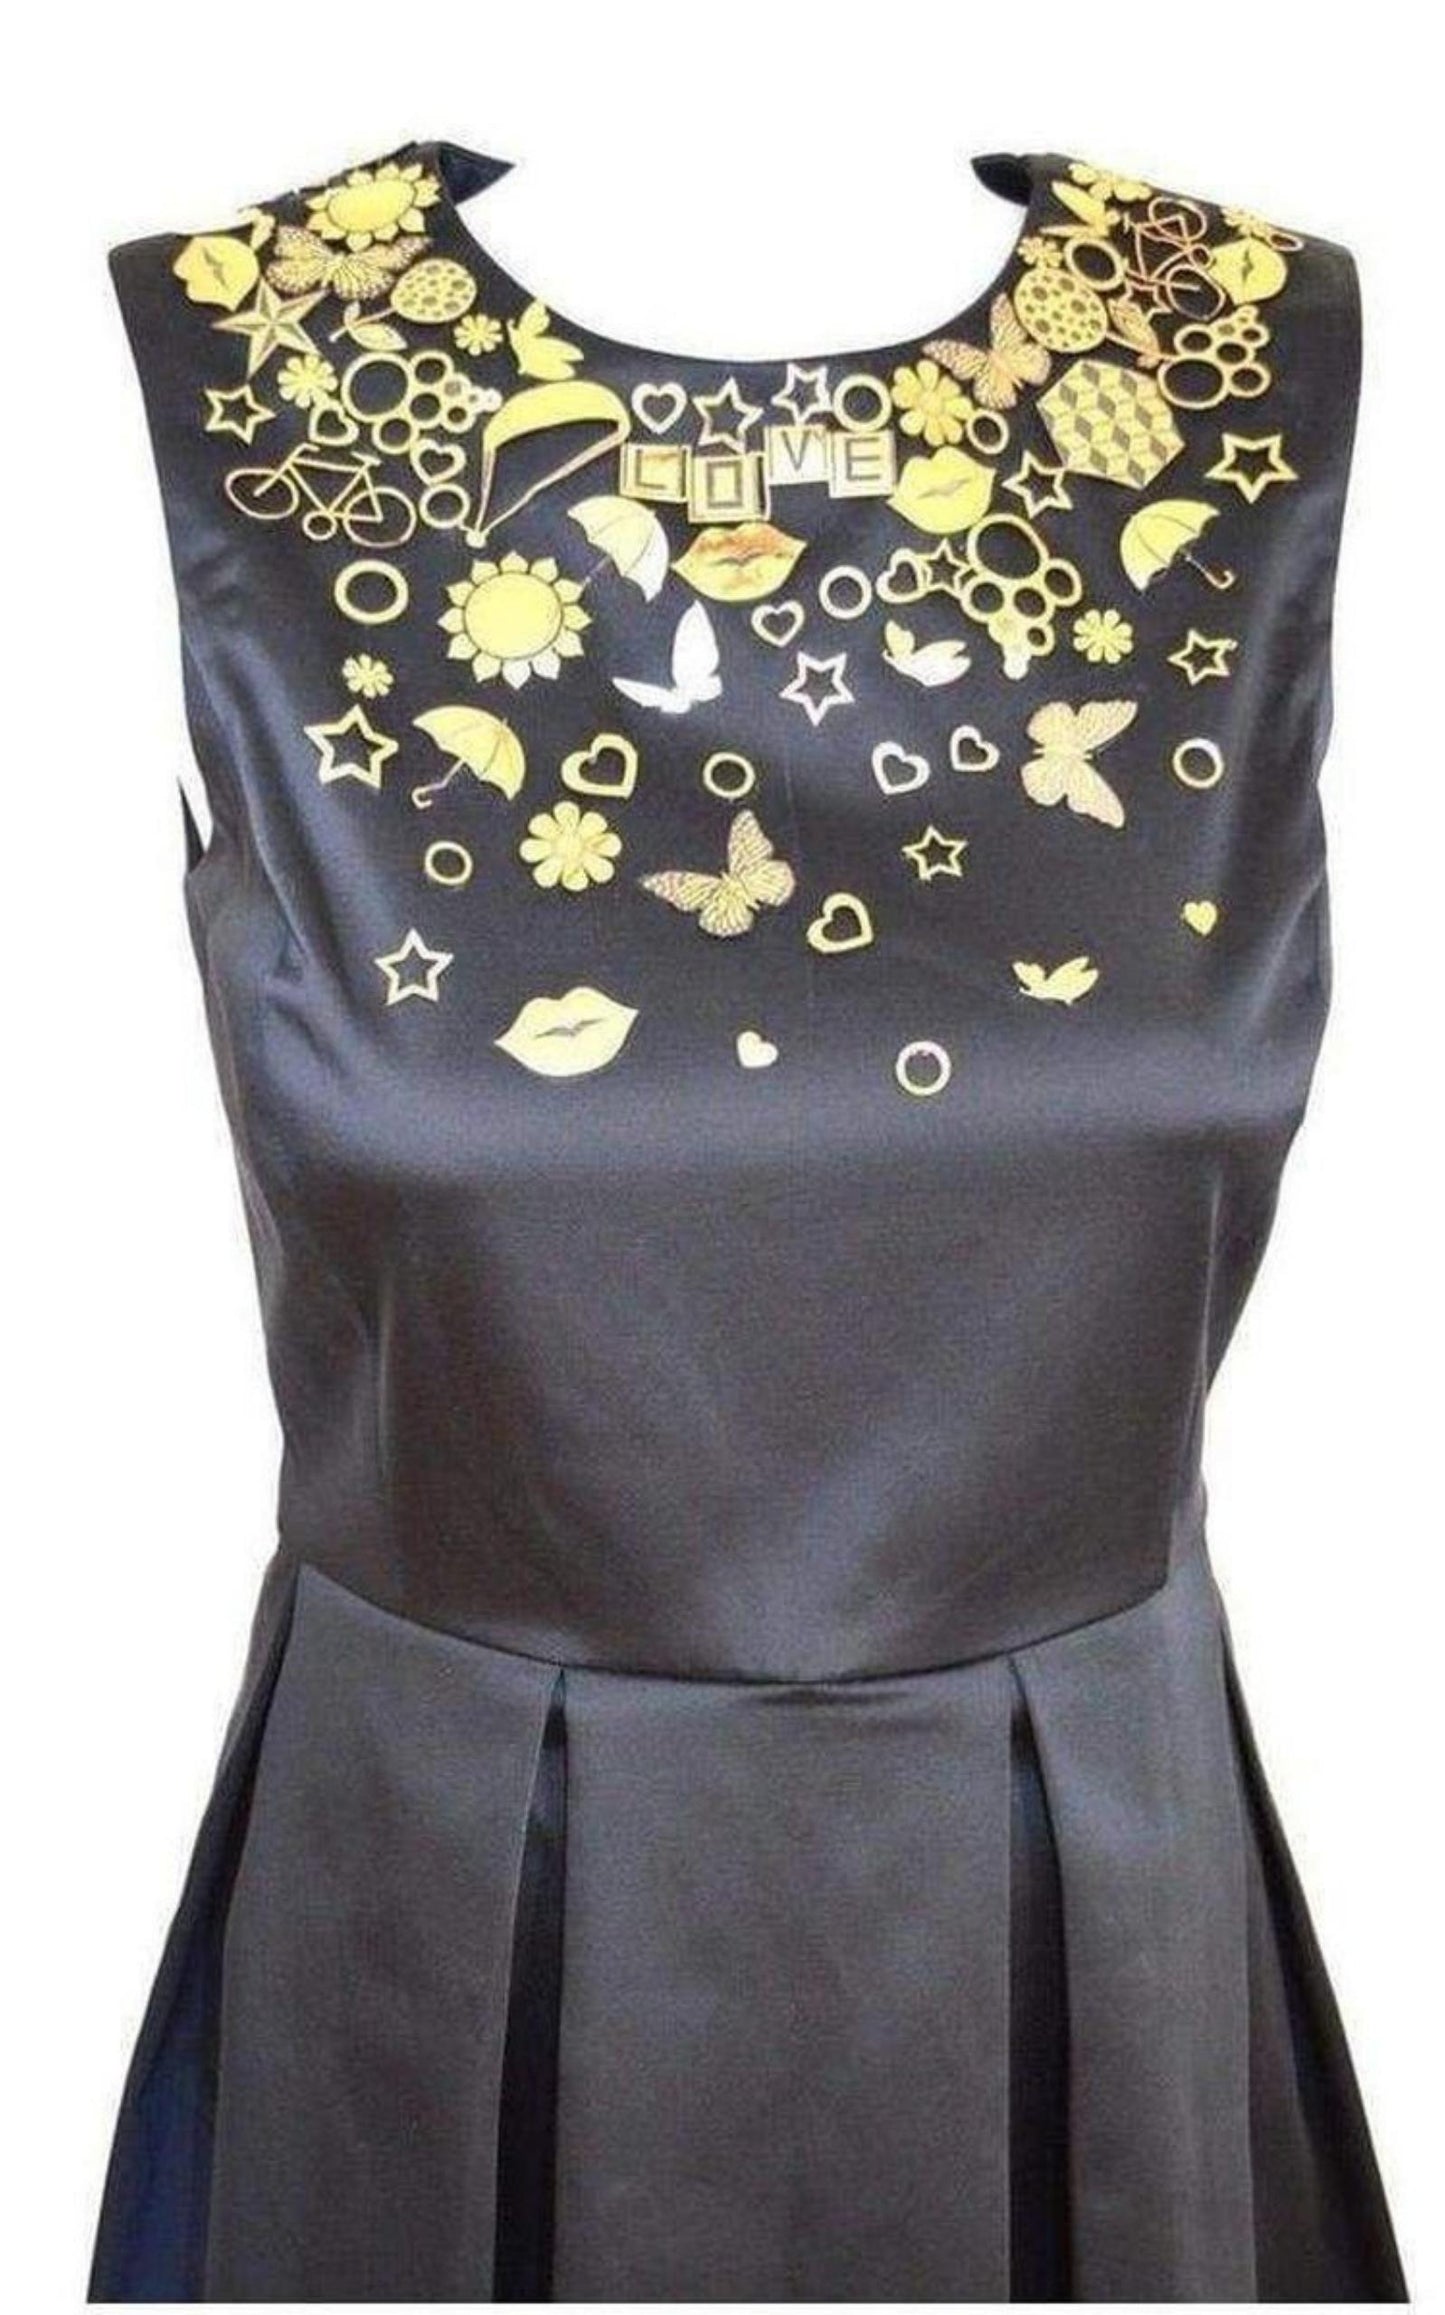  Manish AroraBlack Gold Embellished Details Dress - Runway Catalog